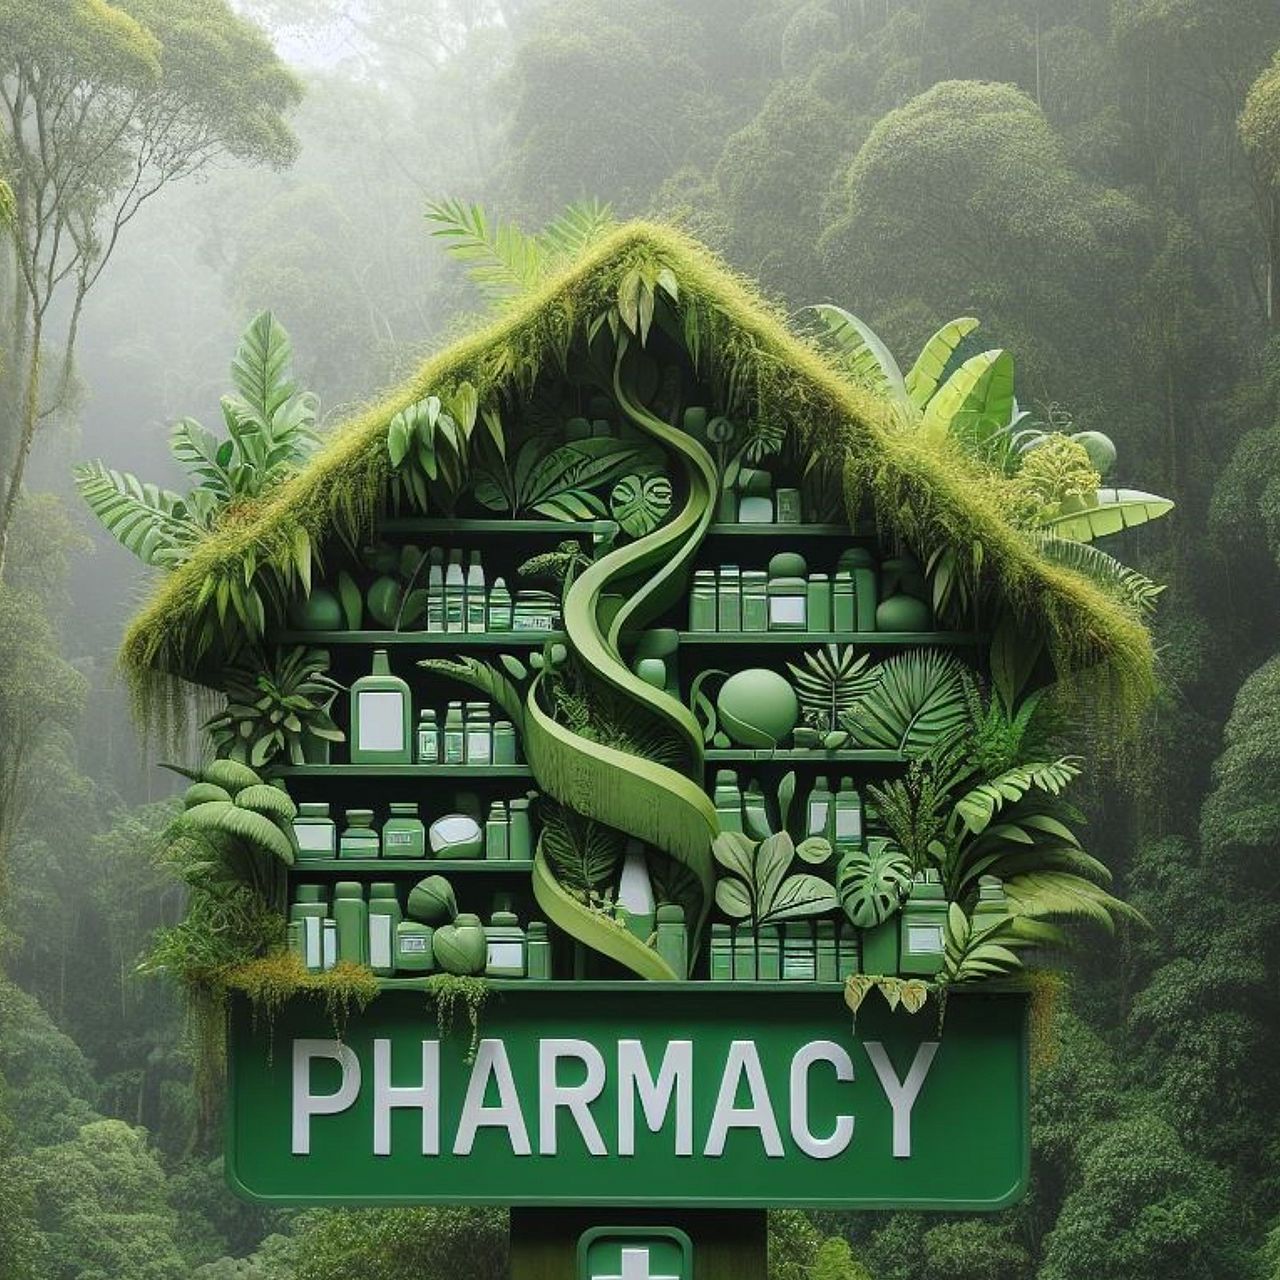 Viele Pflanze aus dem Regenwald liefern Wirkstoffe für Medikamente ©Microsoft Bing Image Creator